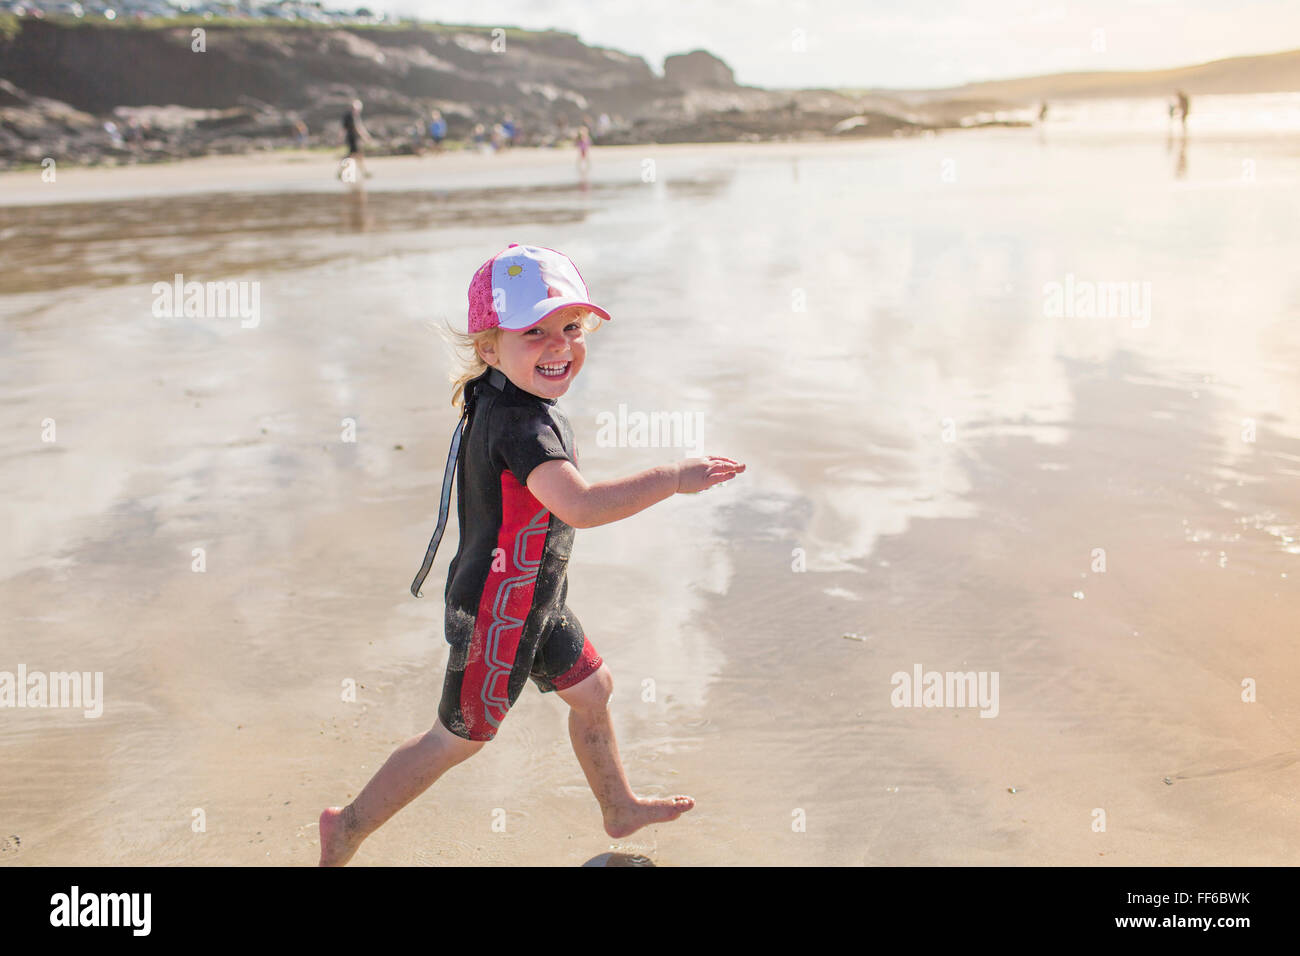 Un enfant dans une combinaison isothermique running on sand Banque D'Images